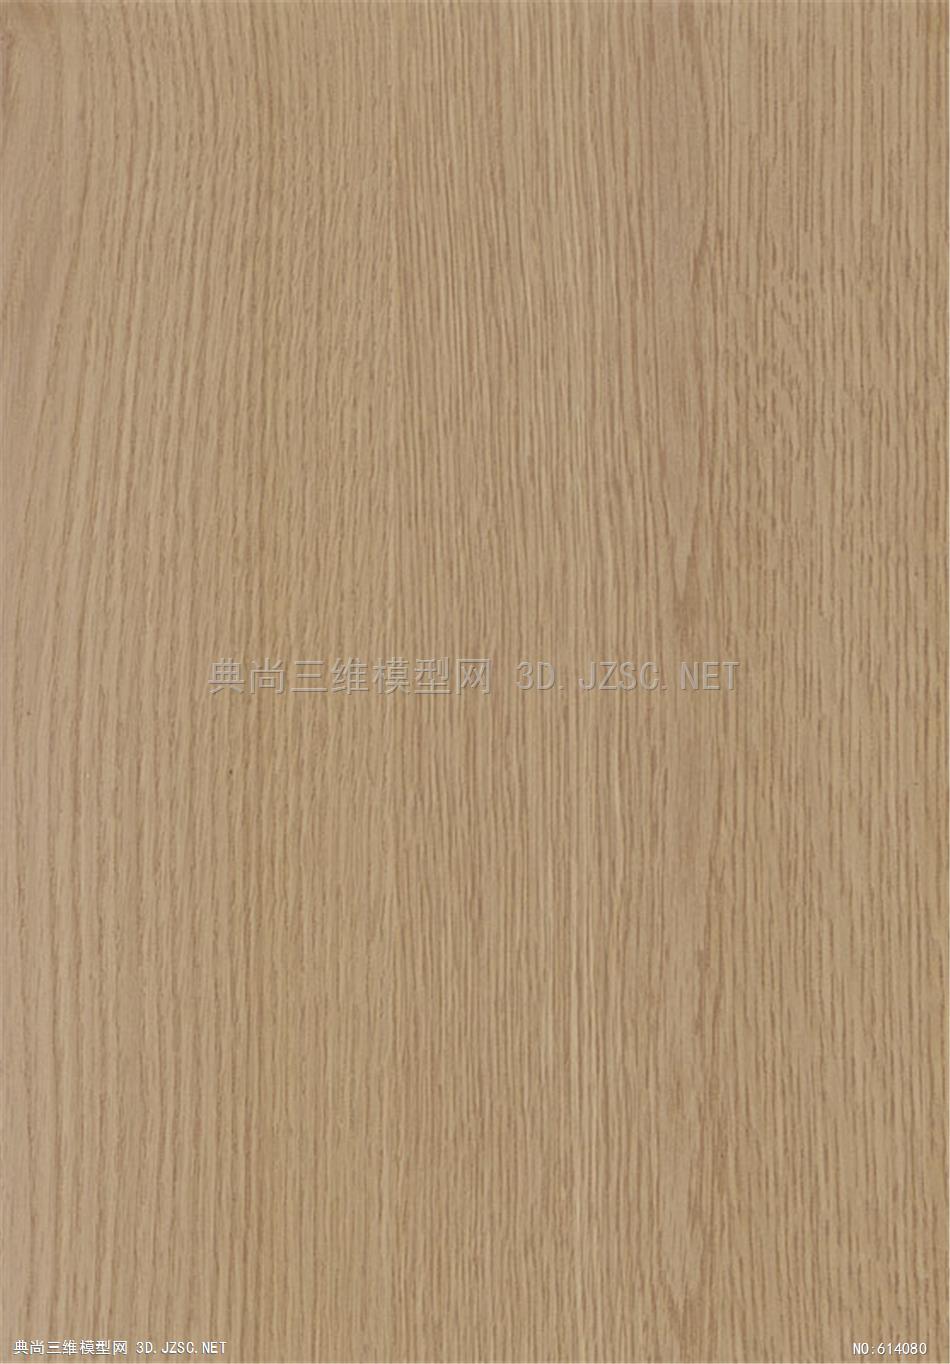 木饰面 木纹 木材  高清材质贴图 (230)